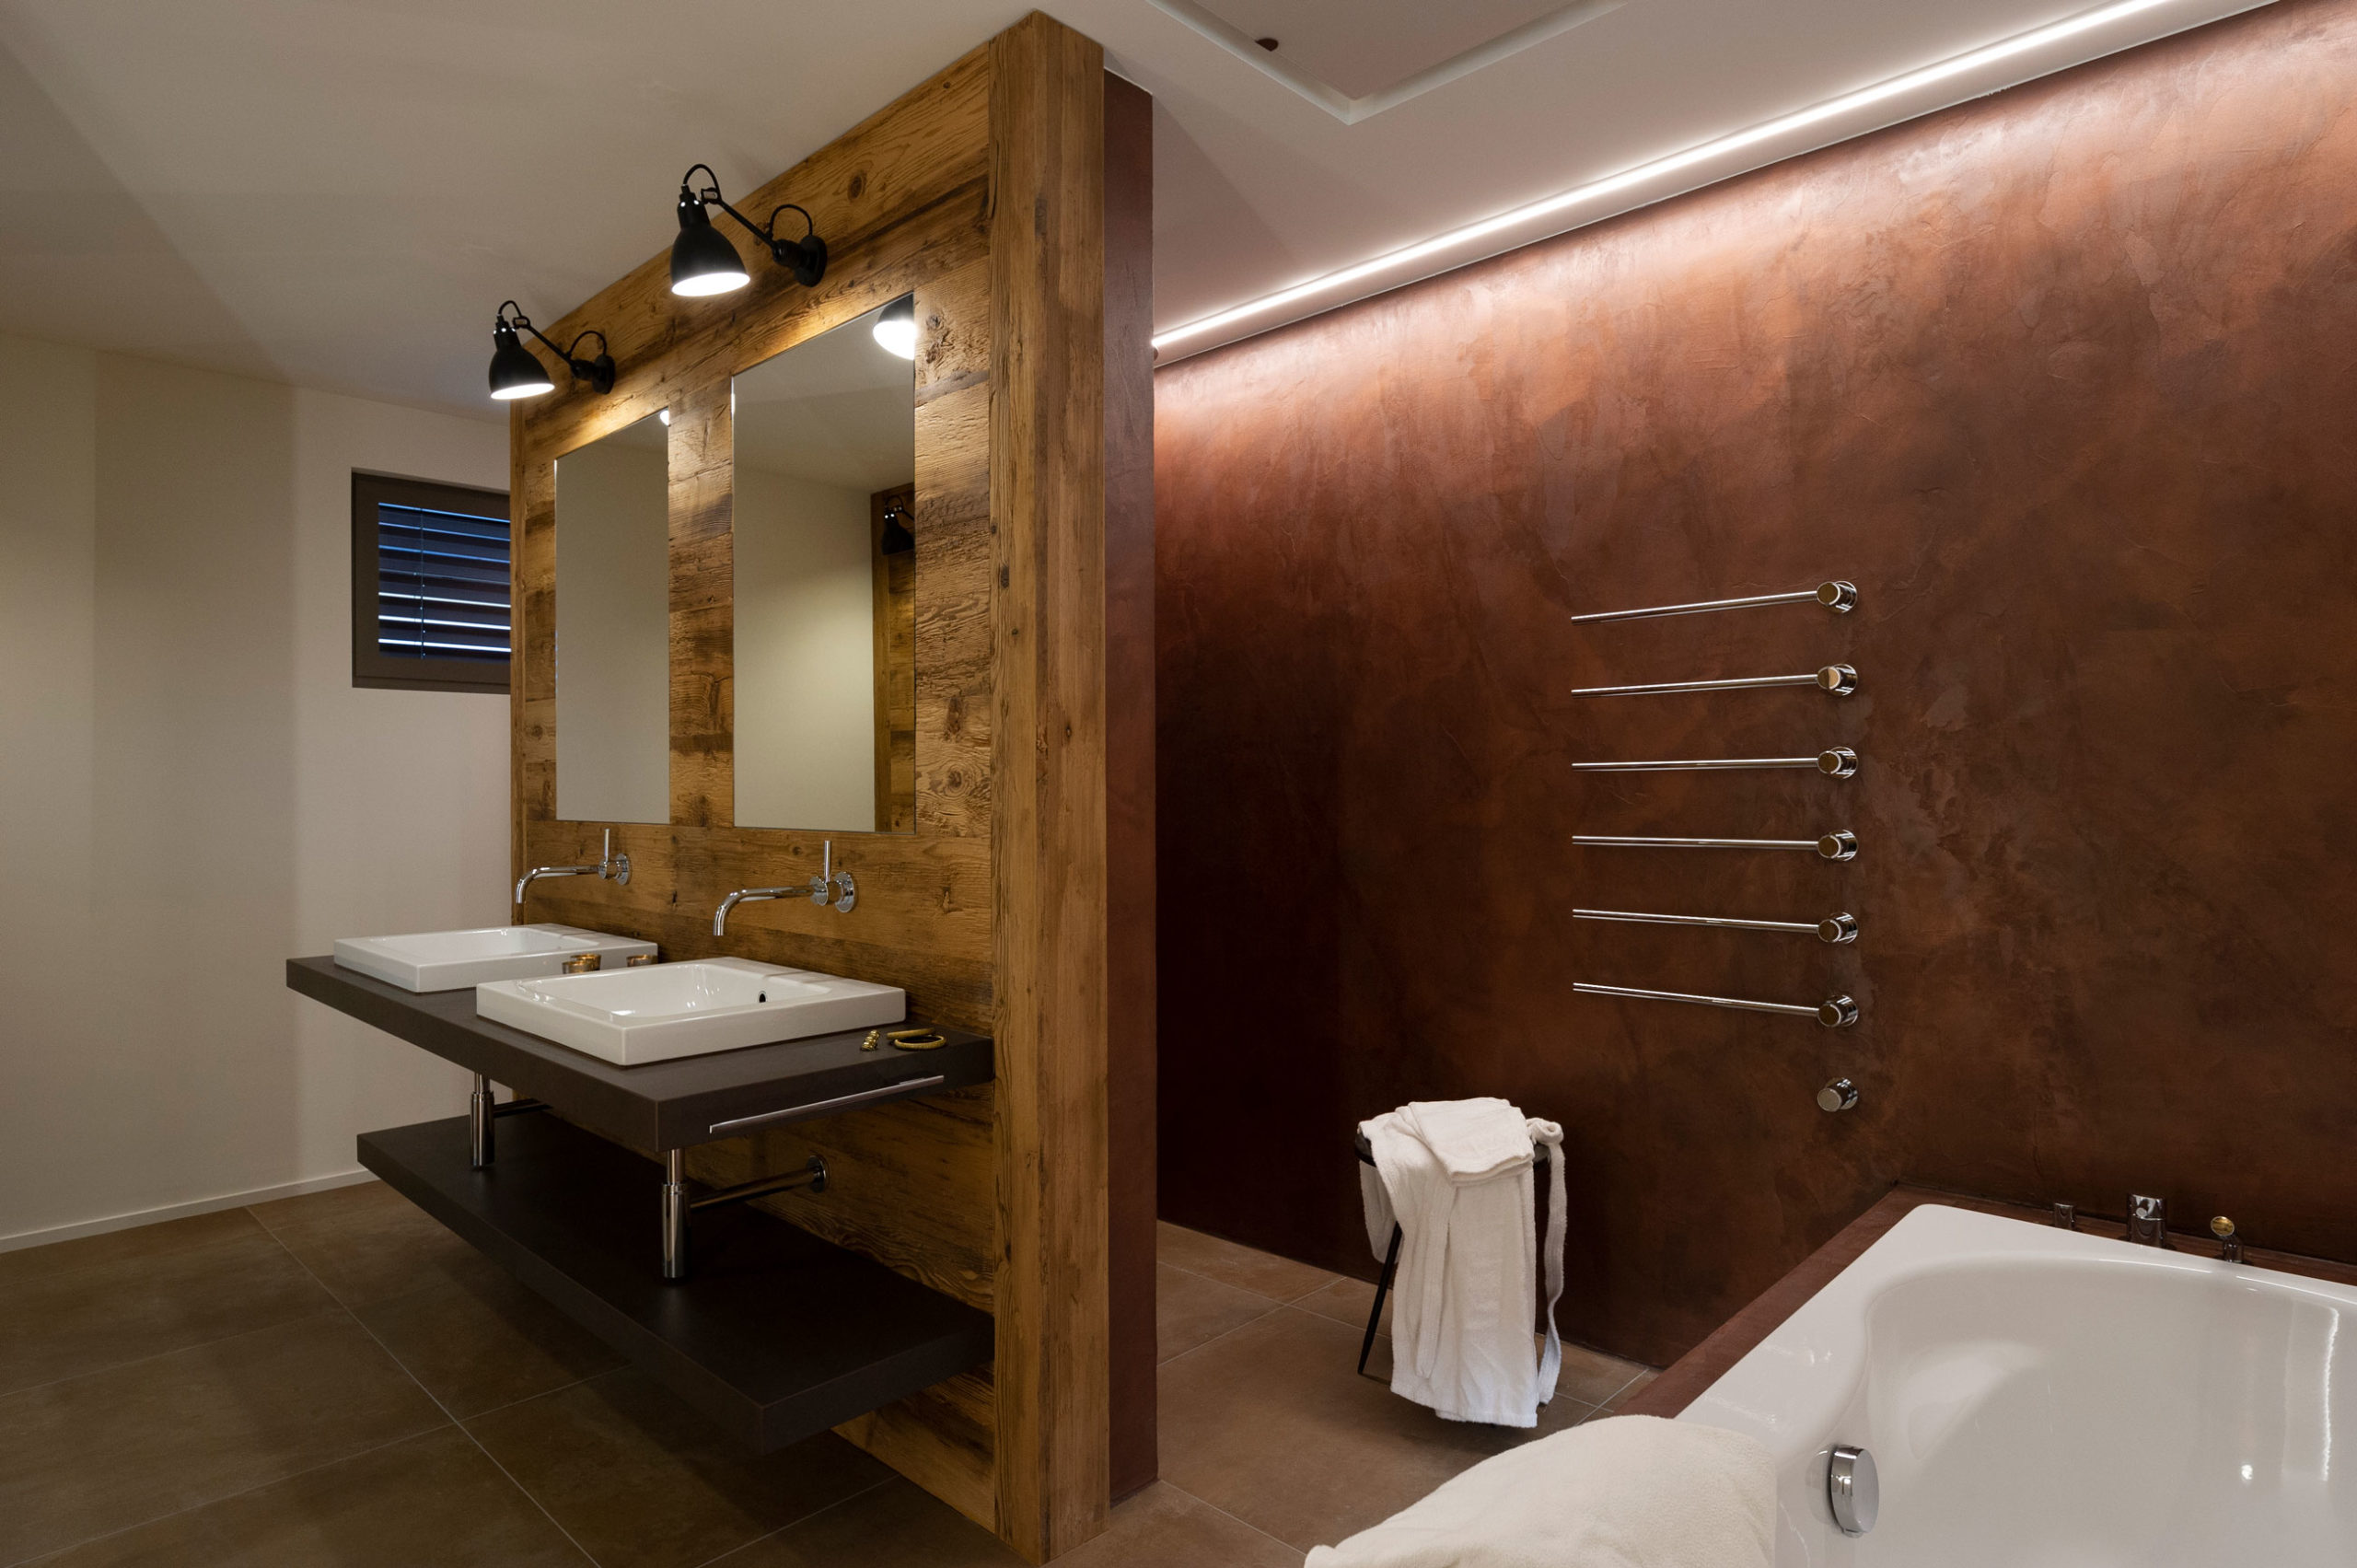 Bad eines Wohn- und Geschäftshauses in Uetliburg, braune verwaschene Wandoberfläche aus Naturofloor